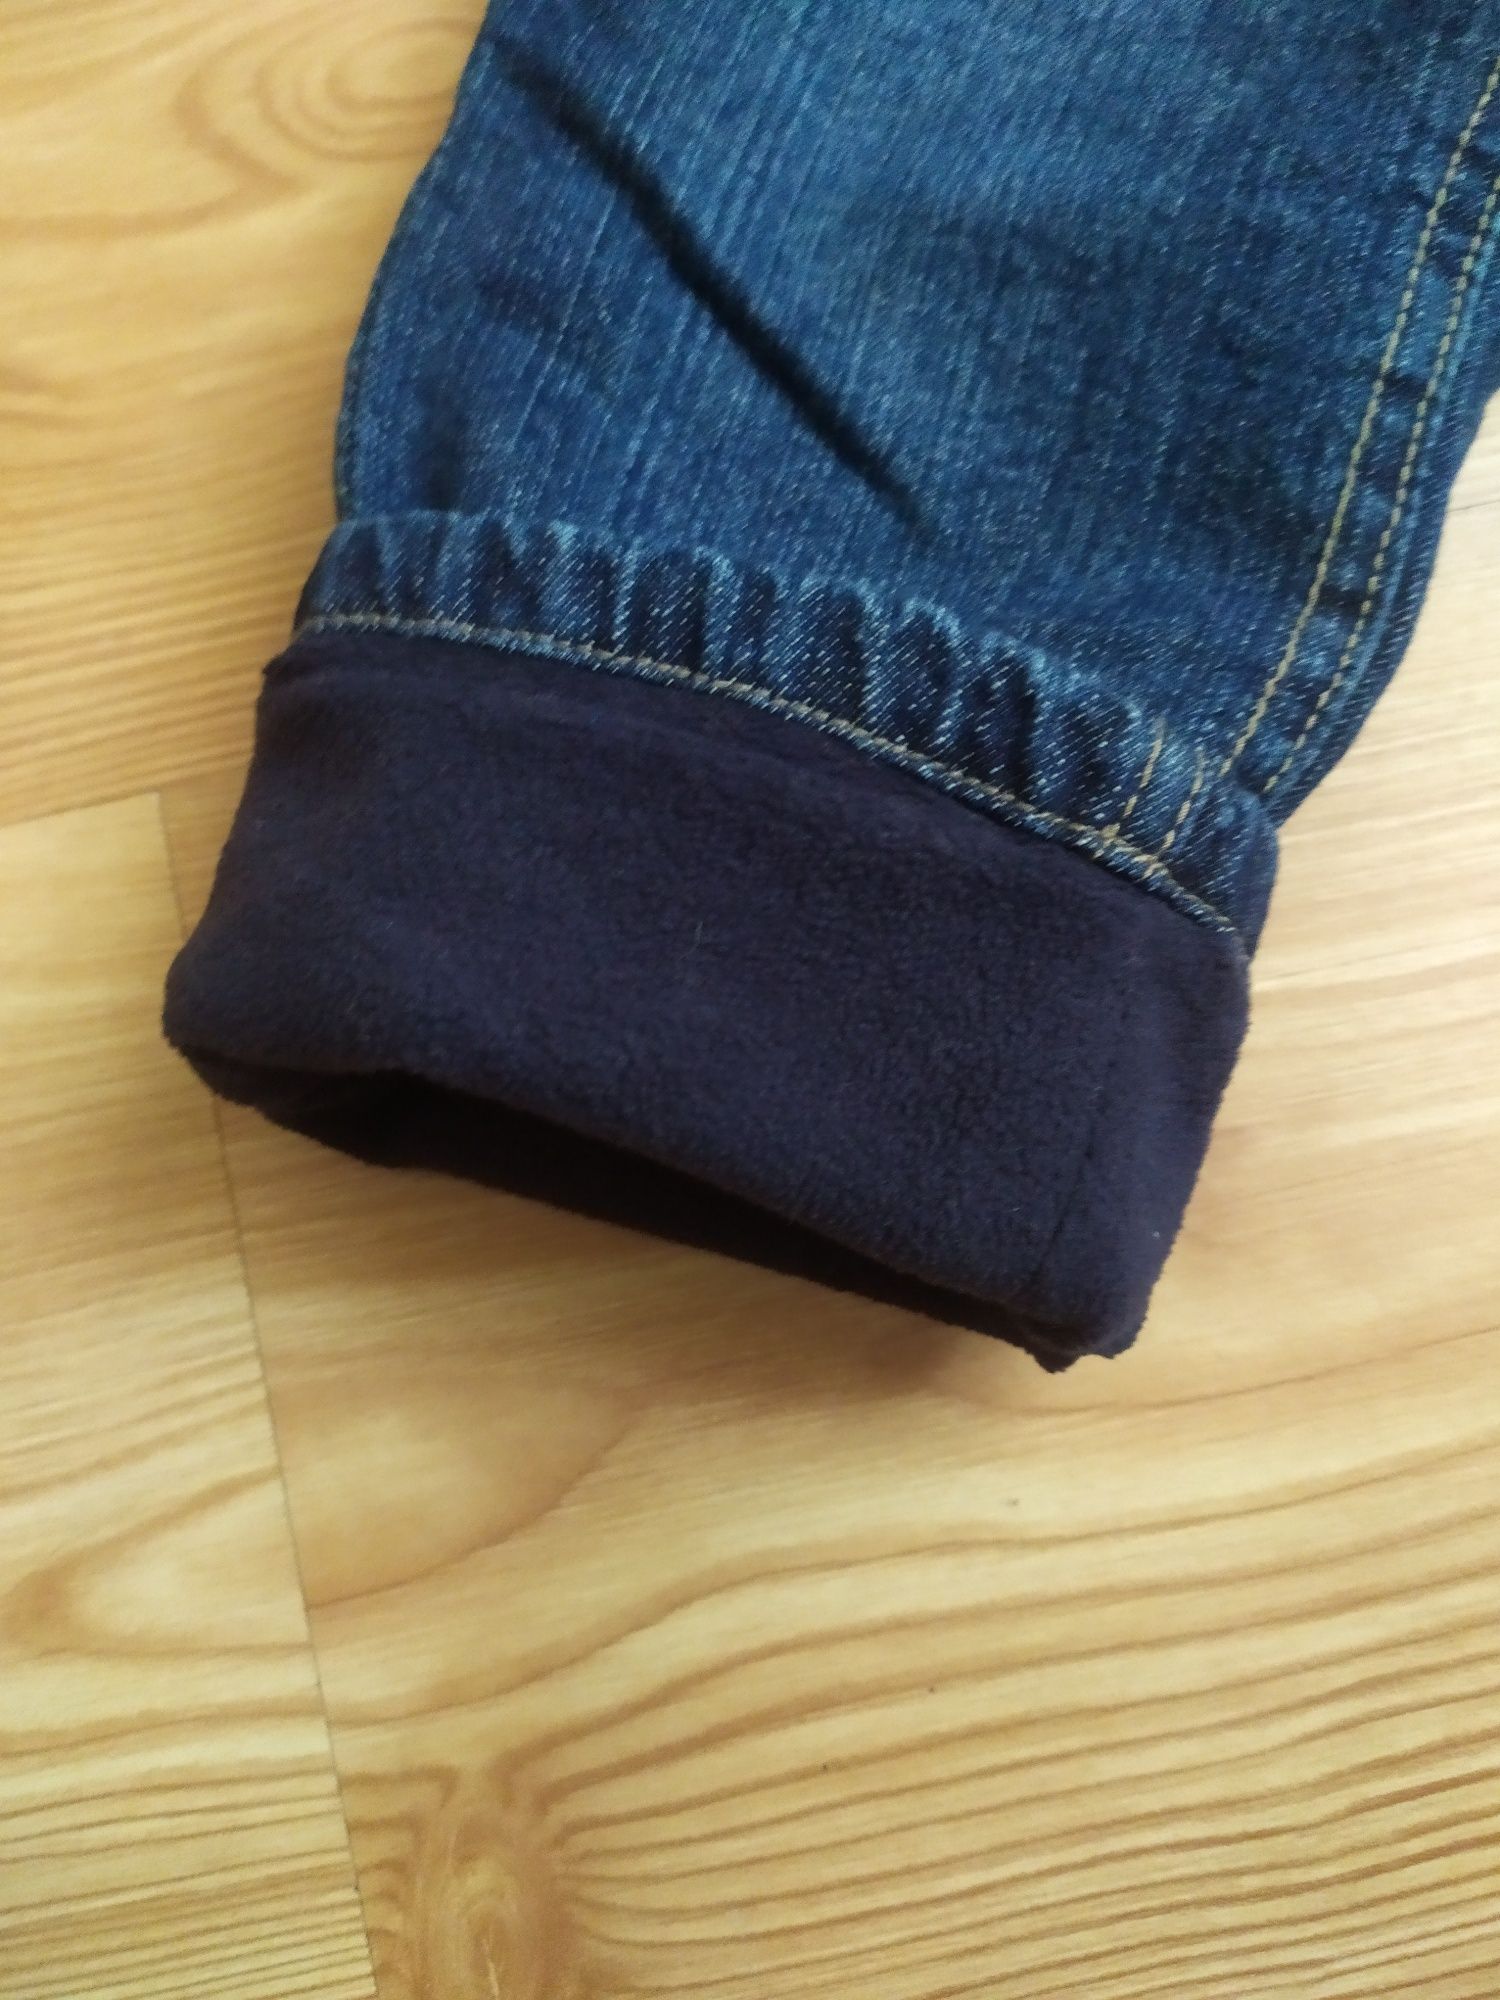 Spodnie jeansowe na polarze, rozmiar 86/92